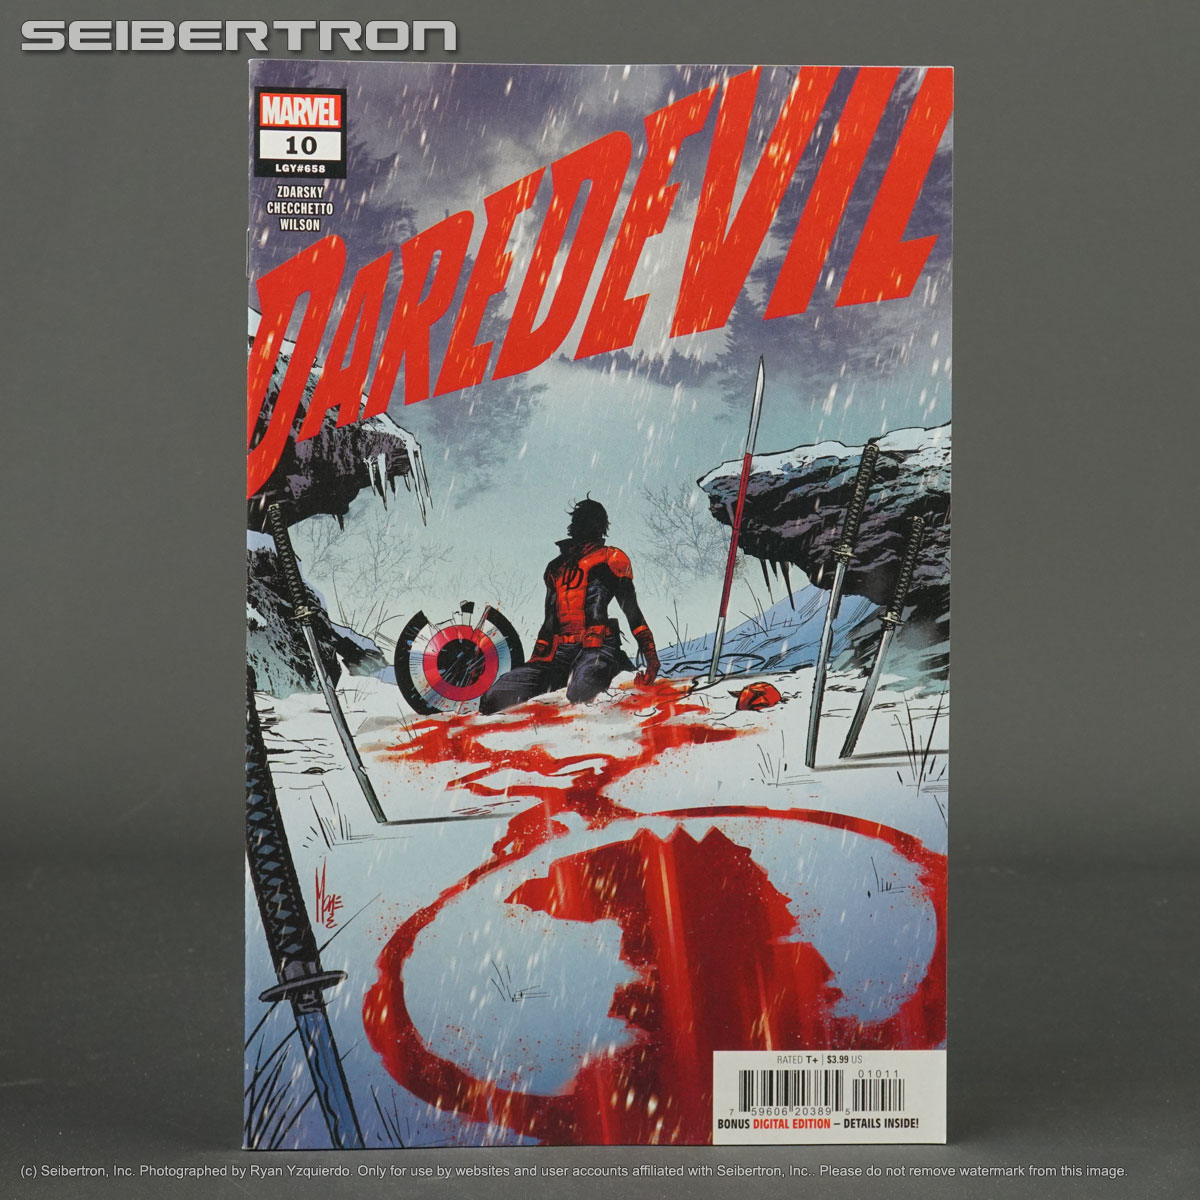 DAREDEVIL #10 Marvel Comics FEB230867 (W) Zdarsky (A/CA) Checchetto